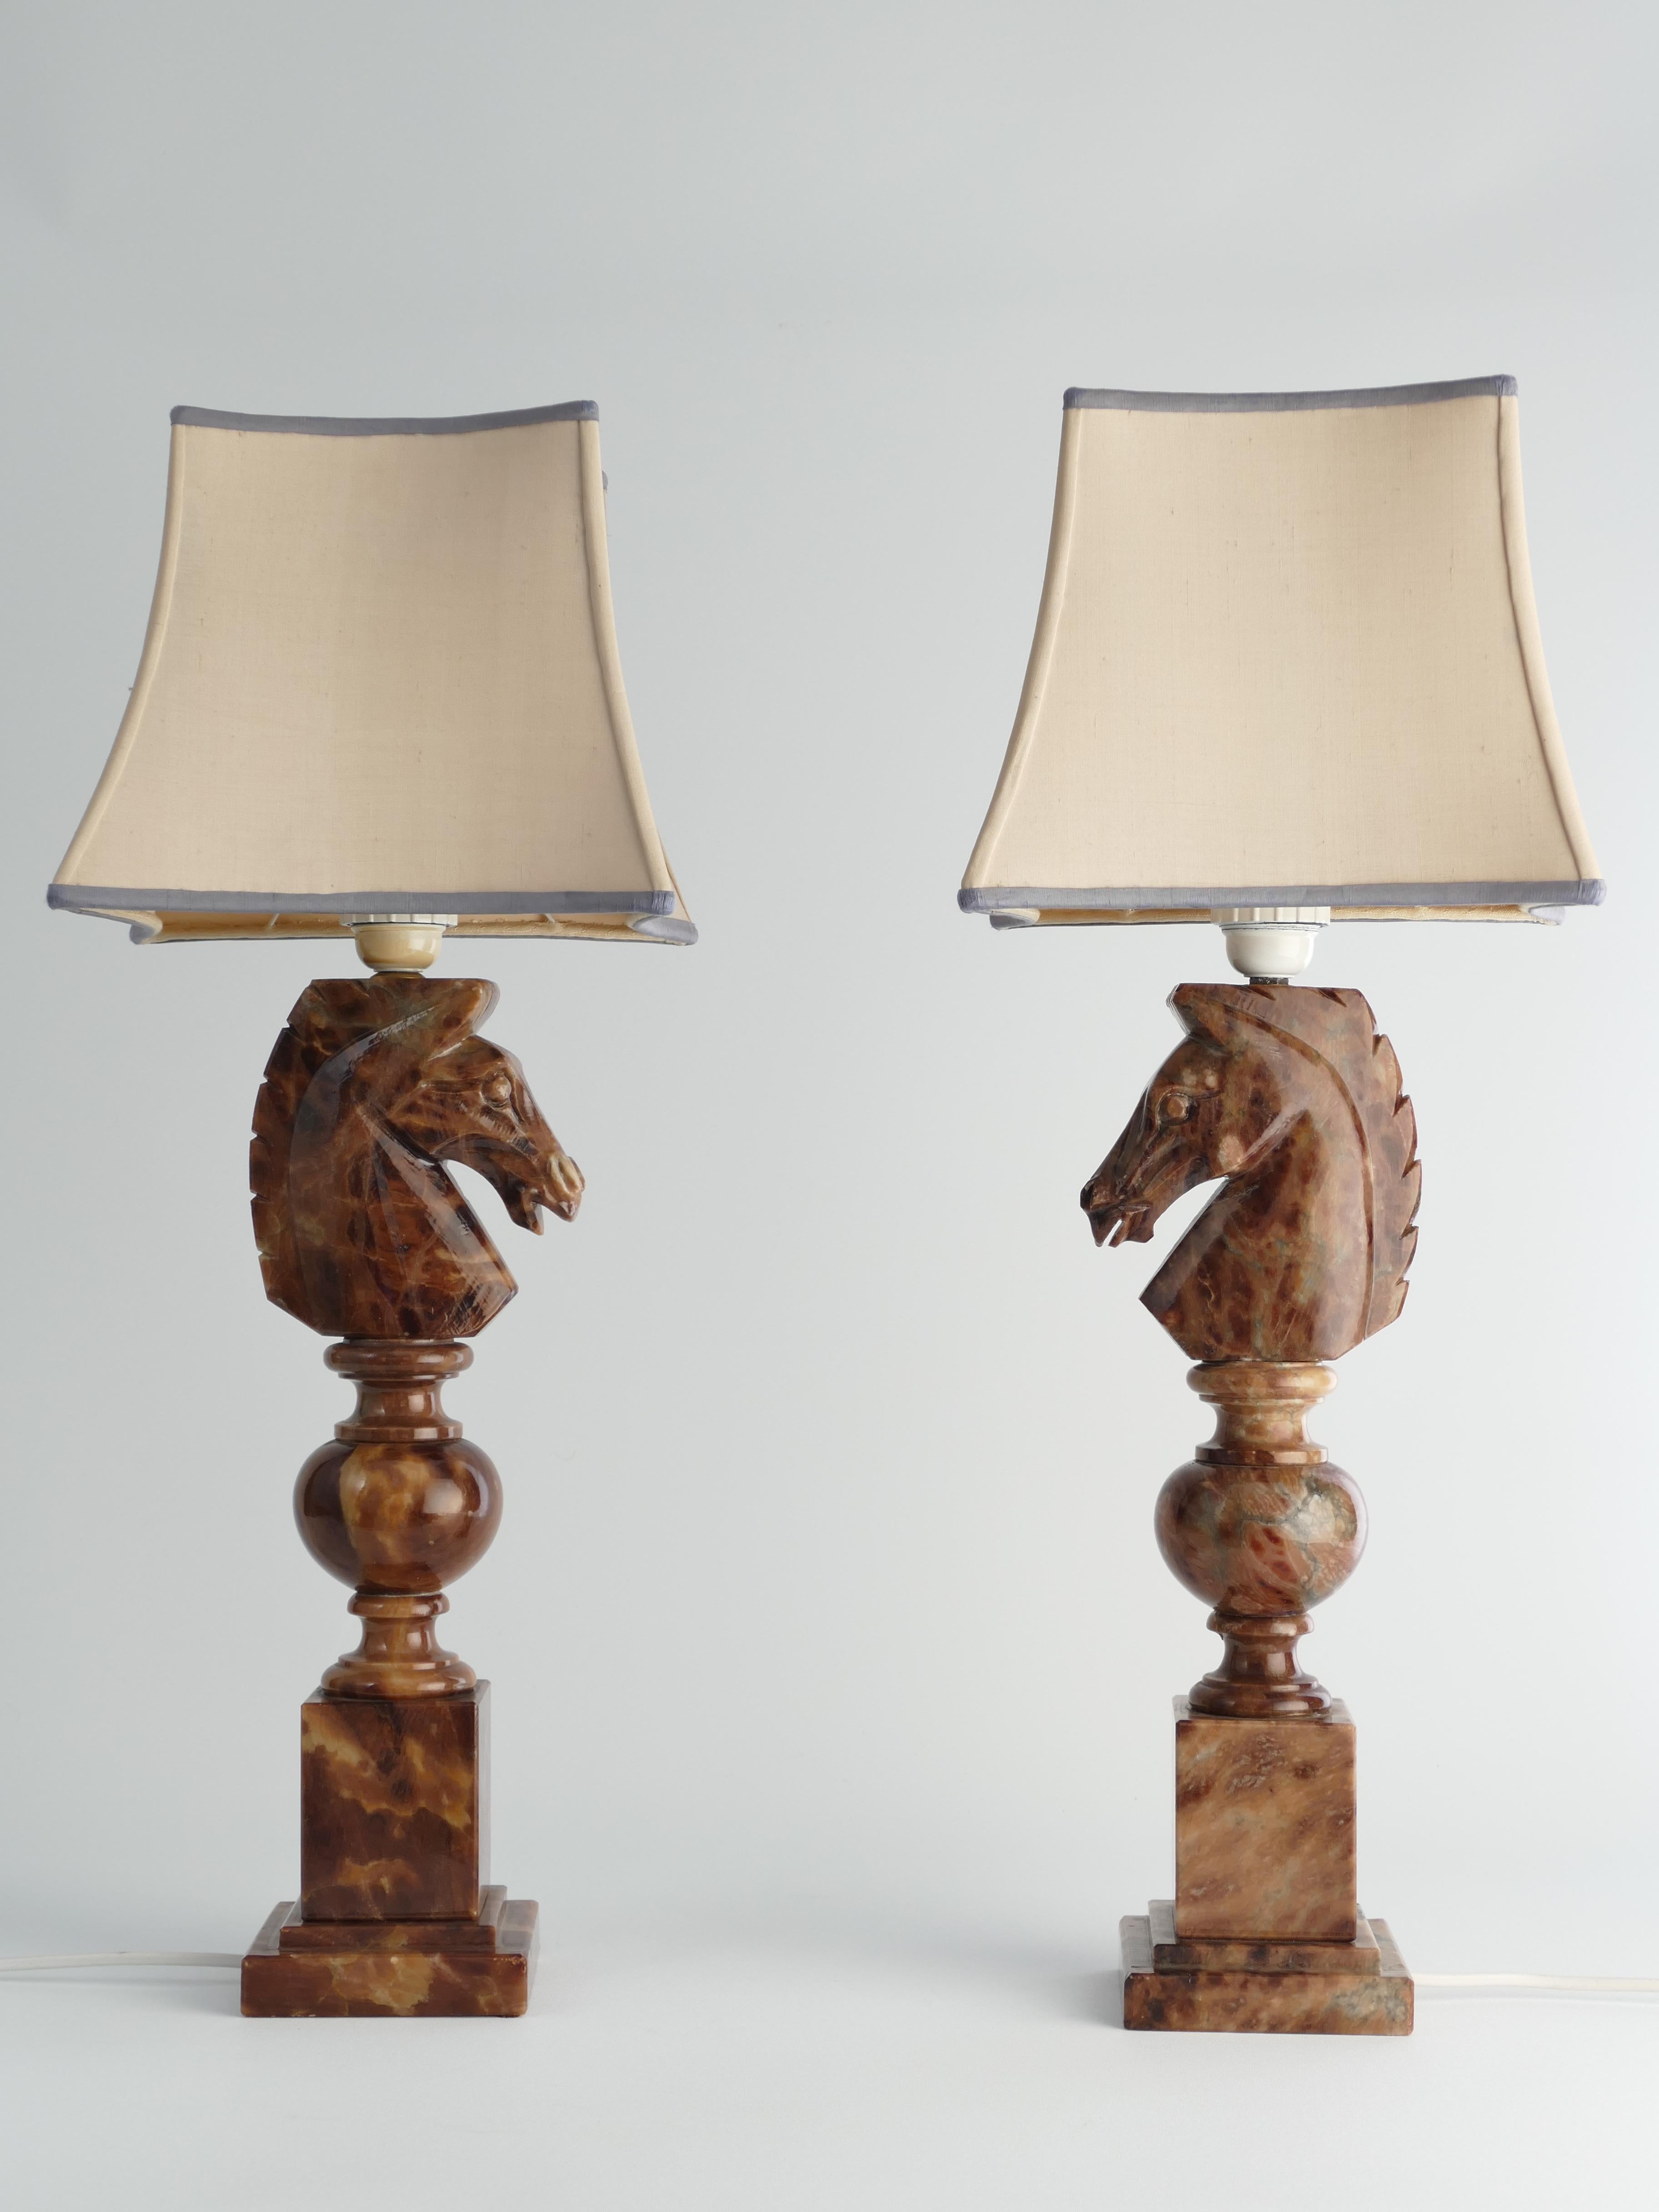 Une étonnante paire de lampes de table suédoises-italiennes à tête de chevalier en albâtre brun sculpté à la main, Nordiska Kompaniet, fabriquées dans les années 1970.
Le cavalier, pièce essentielle du jeu d'échecs, est symbolisé par la tête et